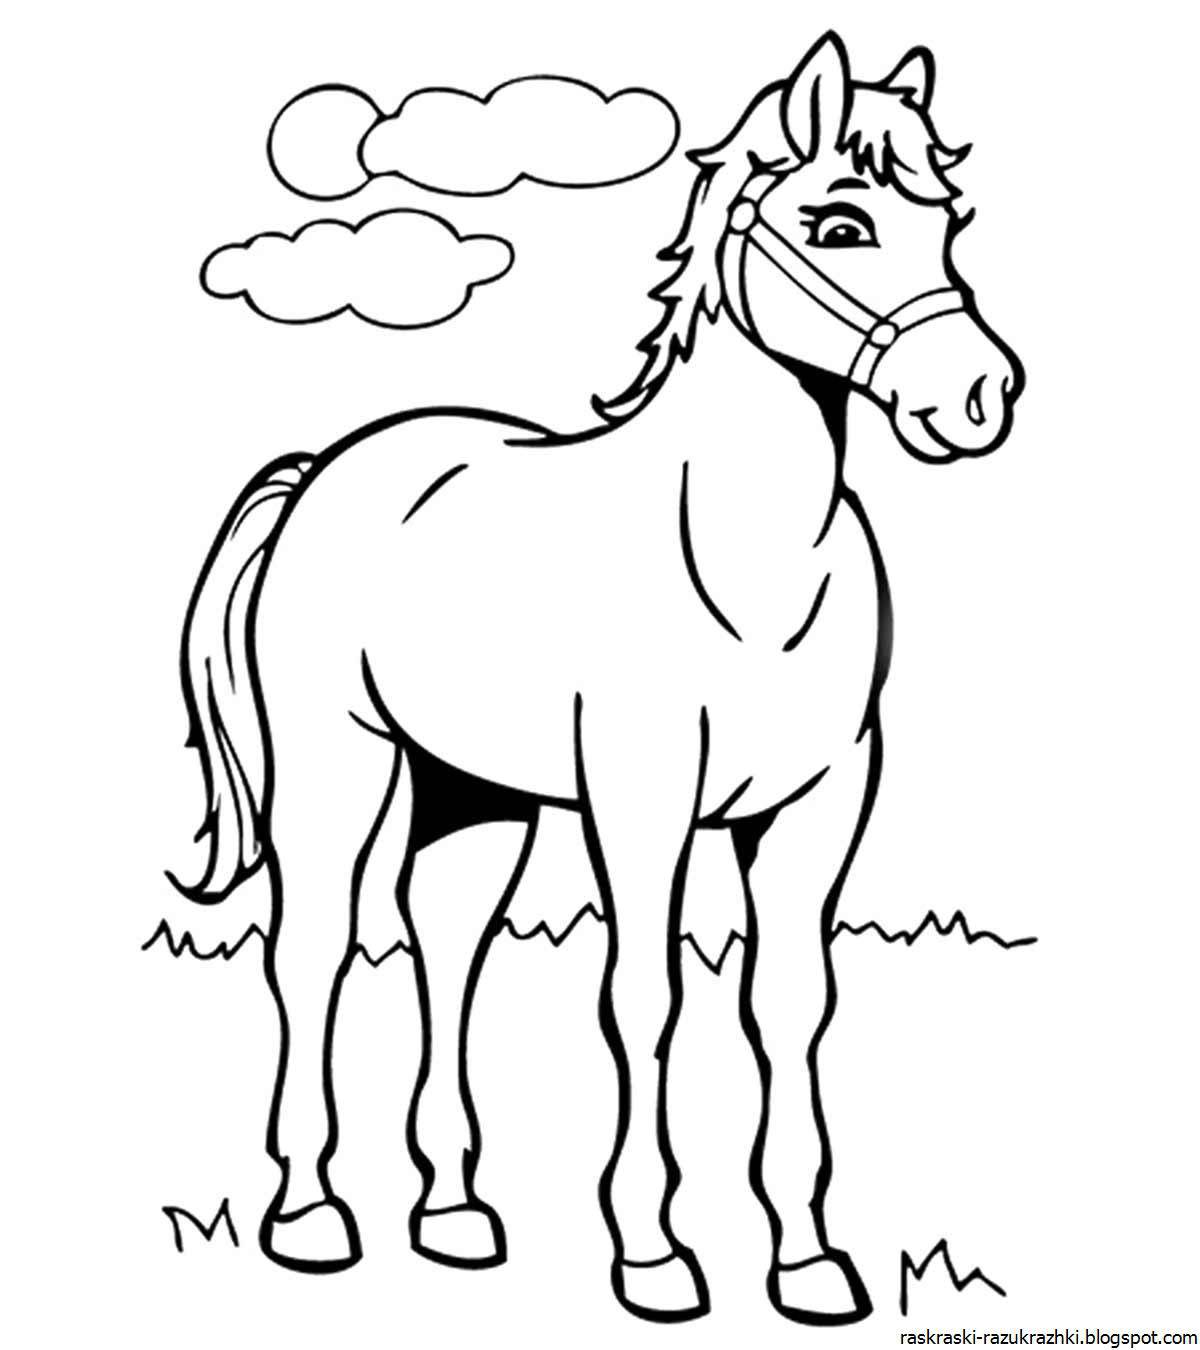 Игривая ахалтекинская раскраска лошадь для детей